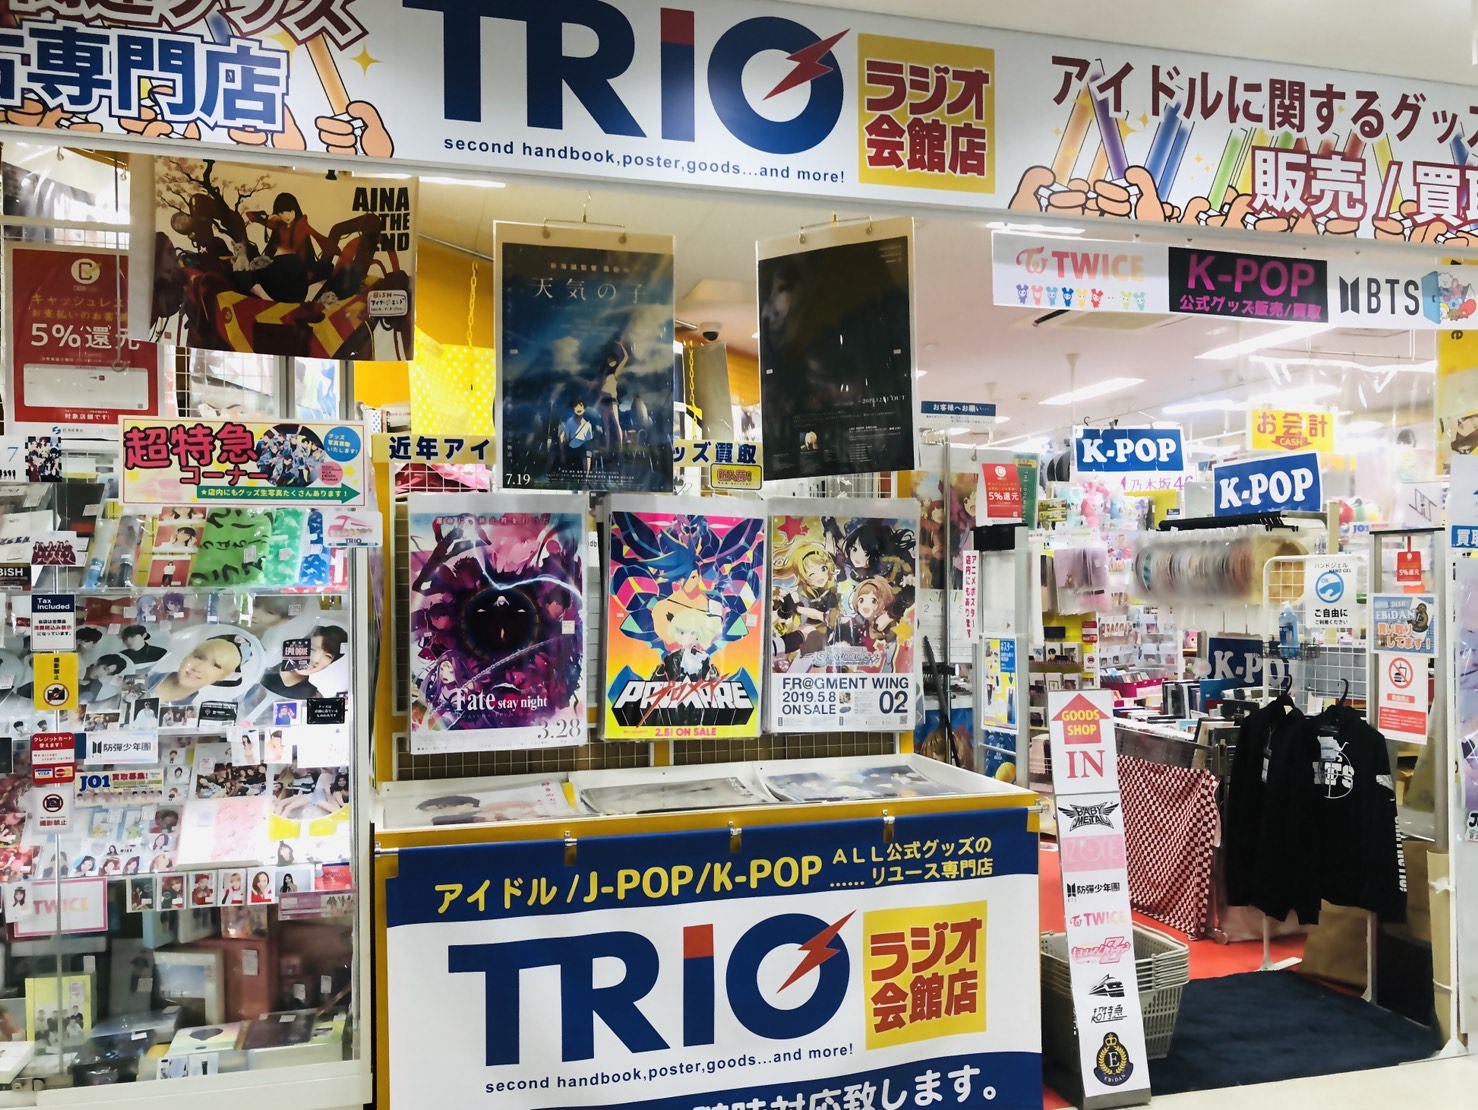 TRIO ラジオ会館店の紹介画像です